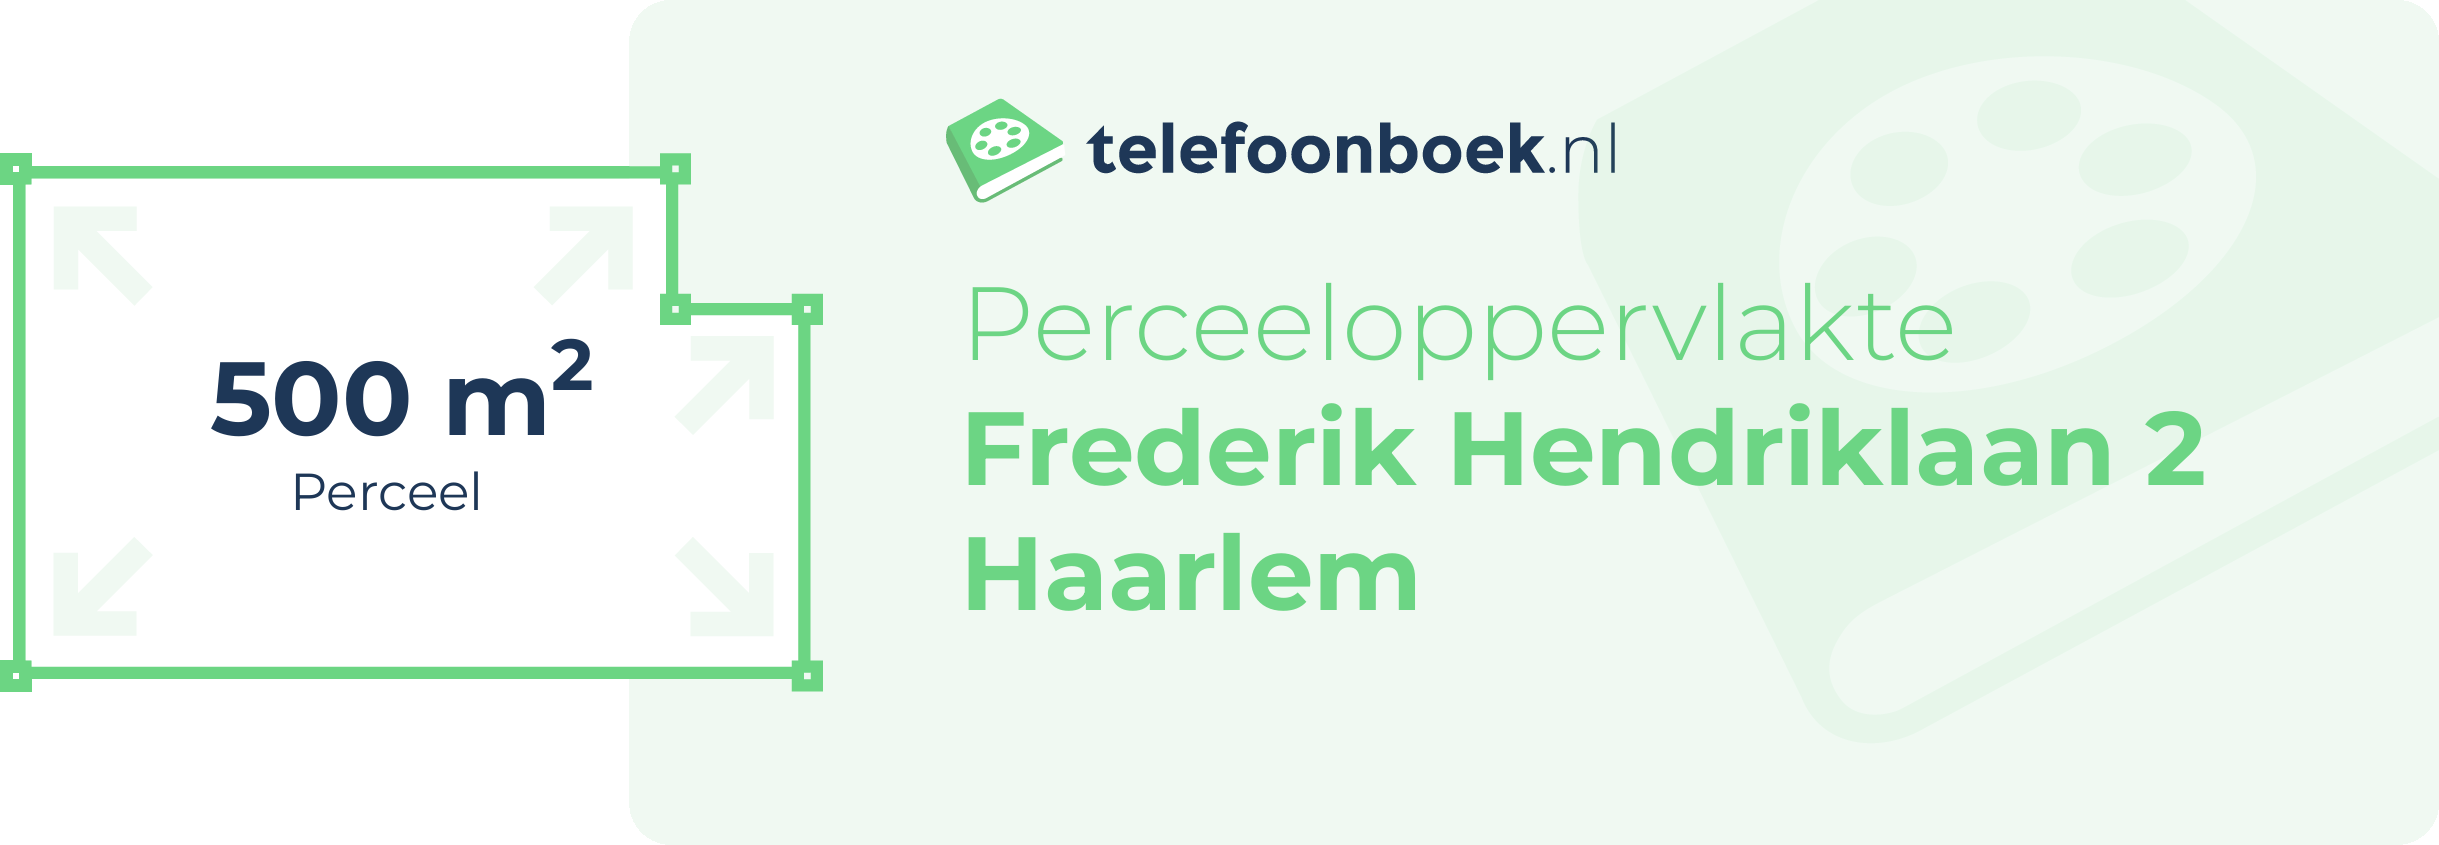 Perceeloppervlakte Frederik Hendriklaan 2 Haarlem